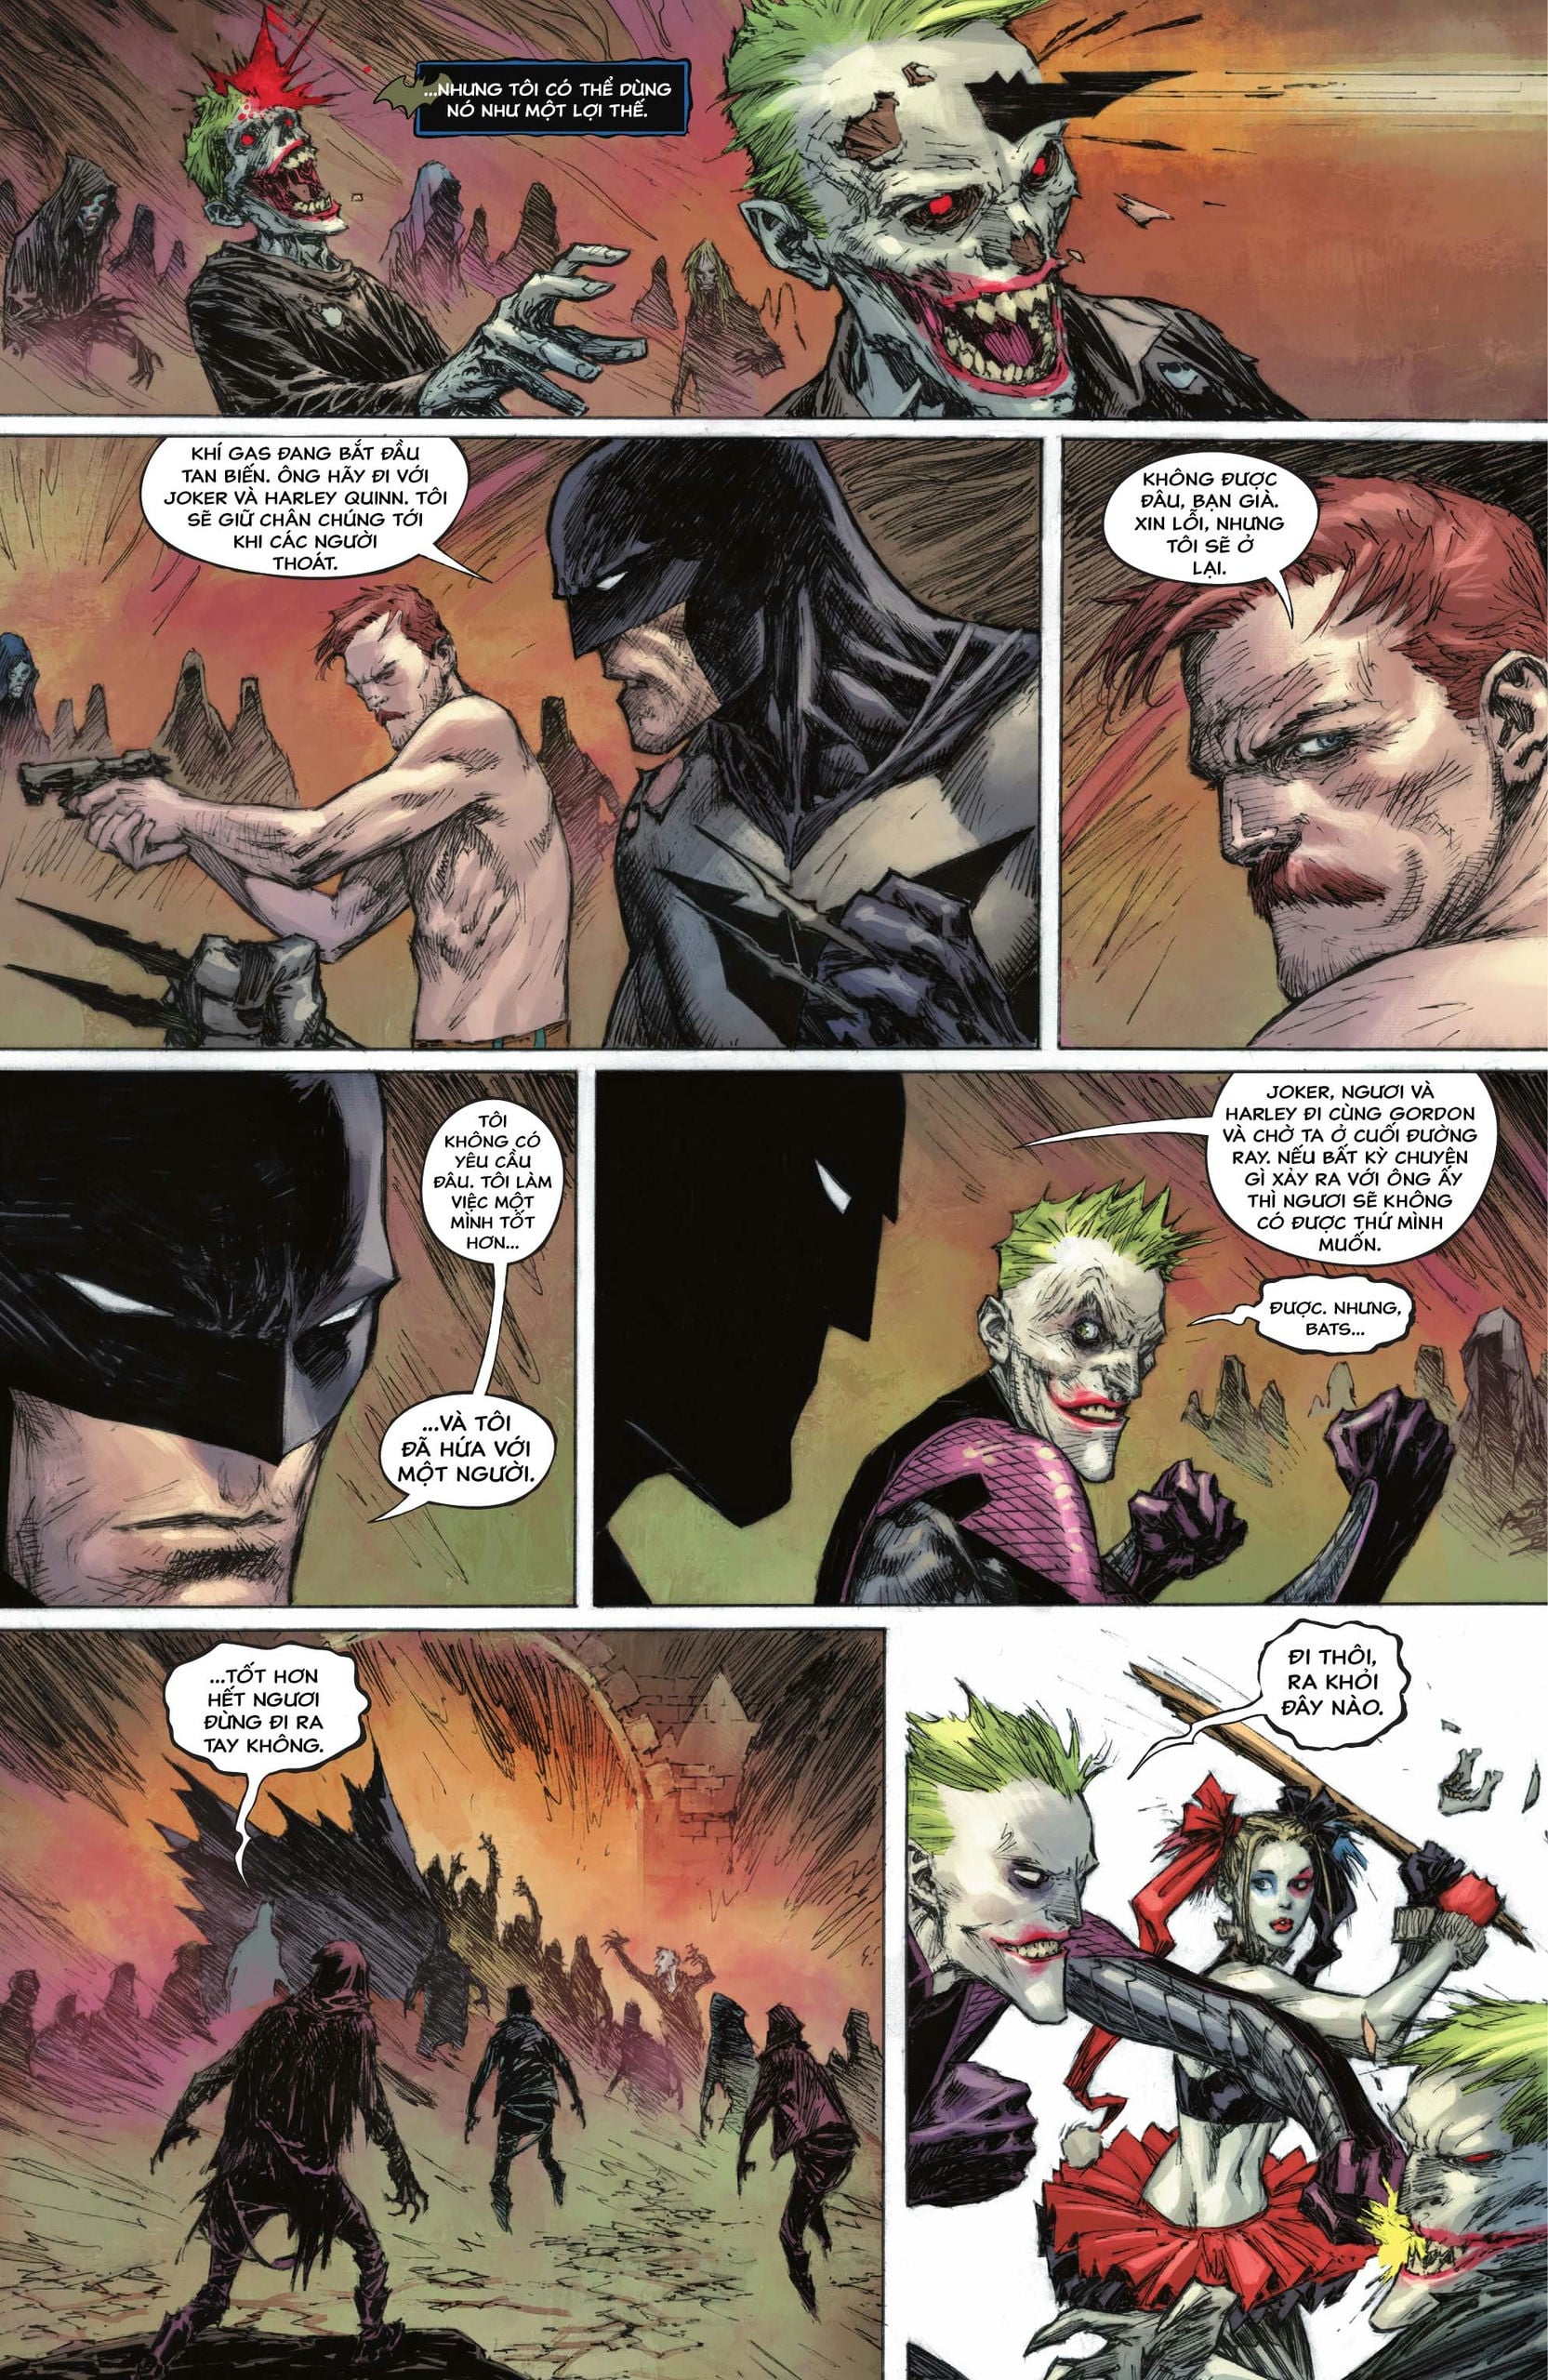 https://langgeek.net/wp-content/webpc-passthru.php?src=https://langgeek.net/wp-content/uploads/2023/05/Batman-_-The-Joker-The-Deadly-Duo-2022-006-018.jpg&nocache=1